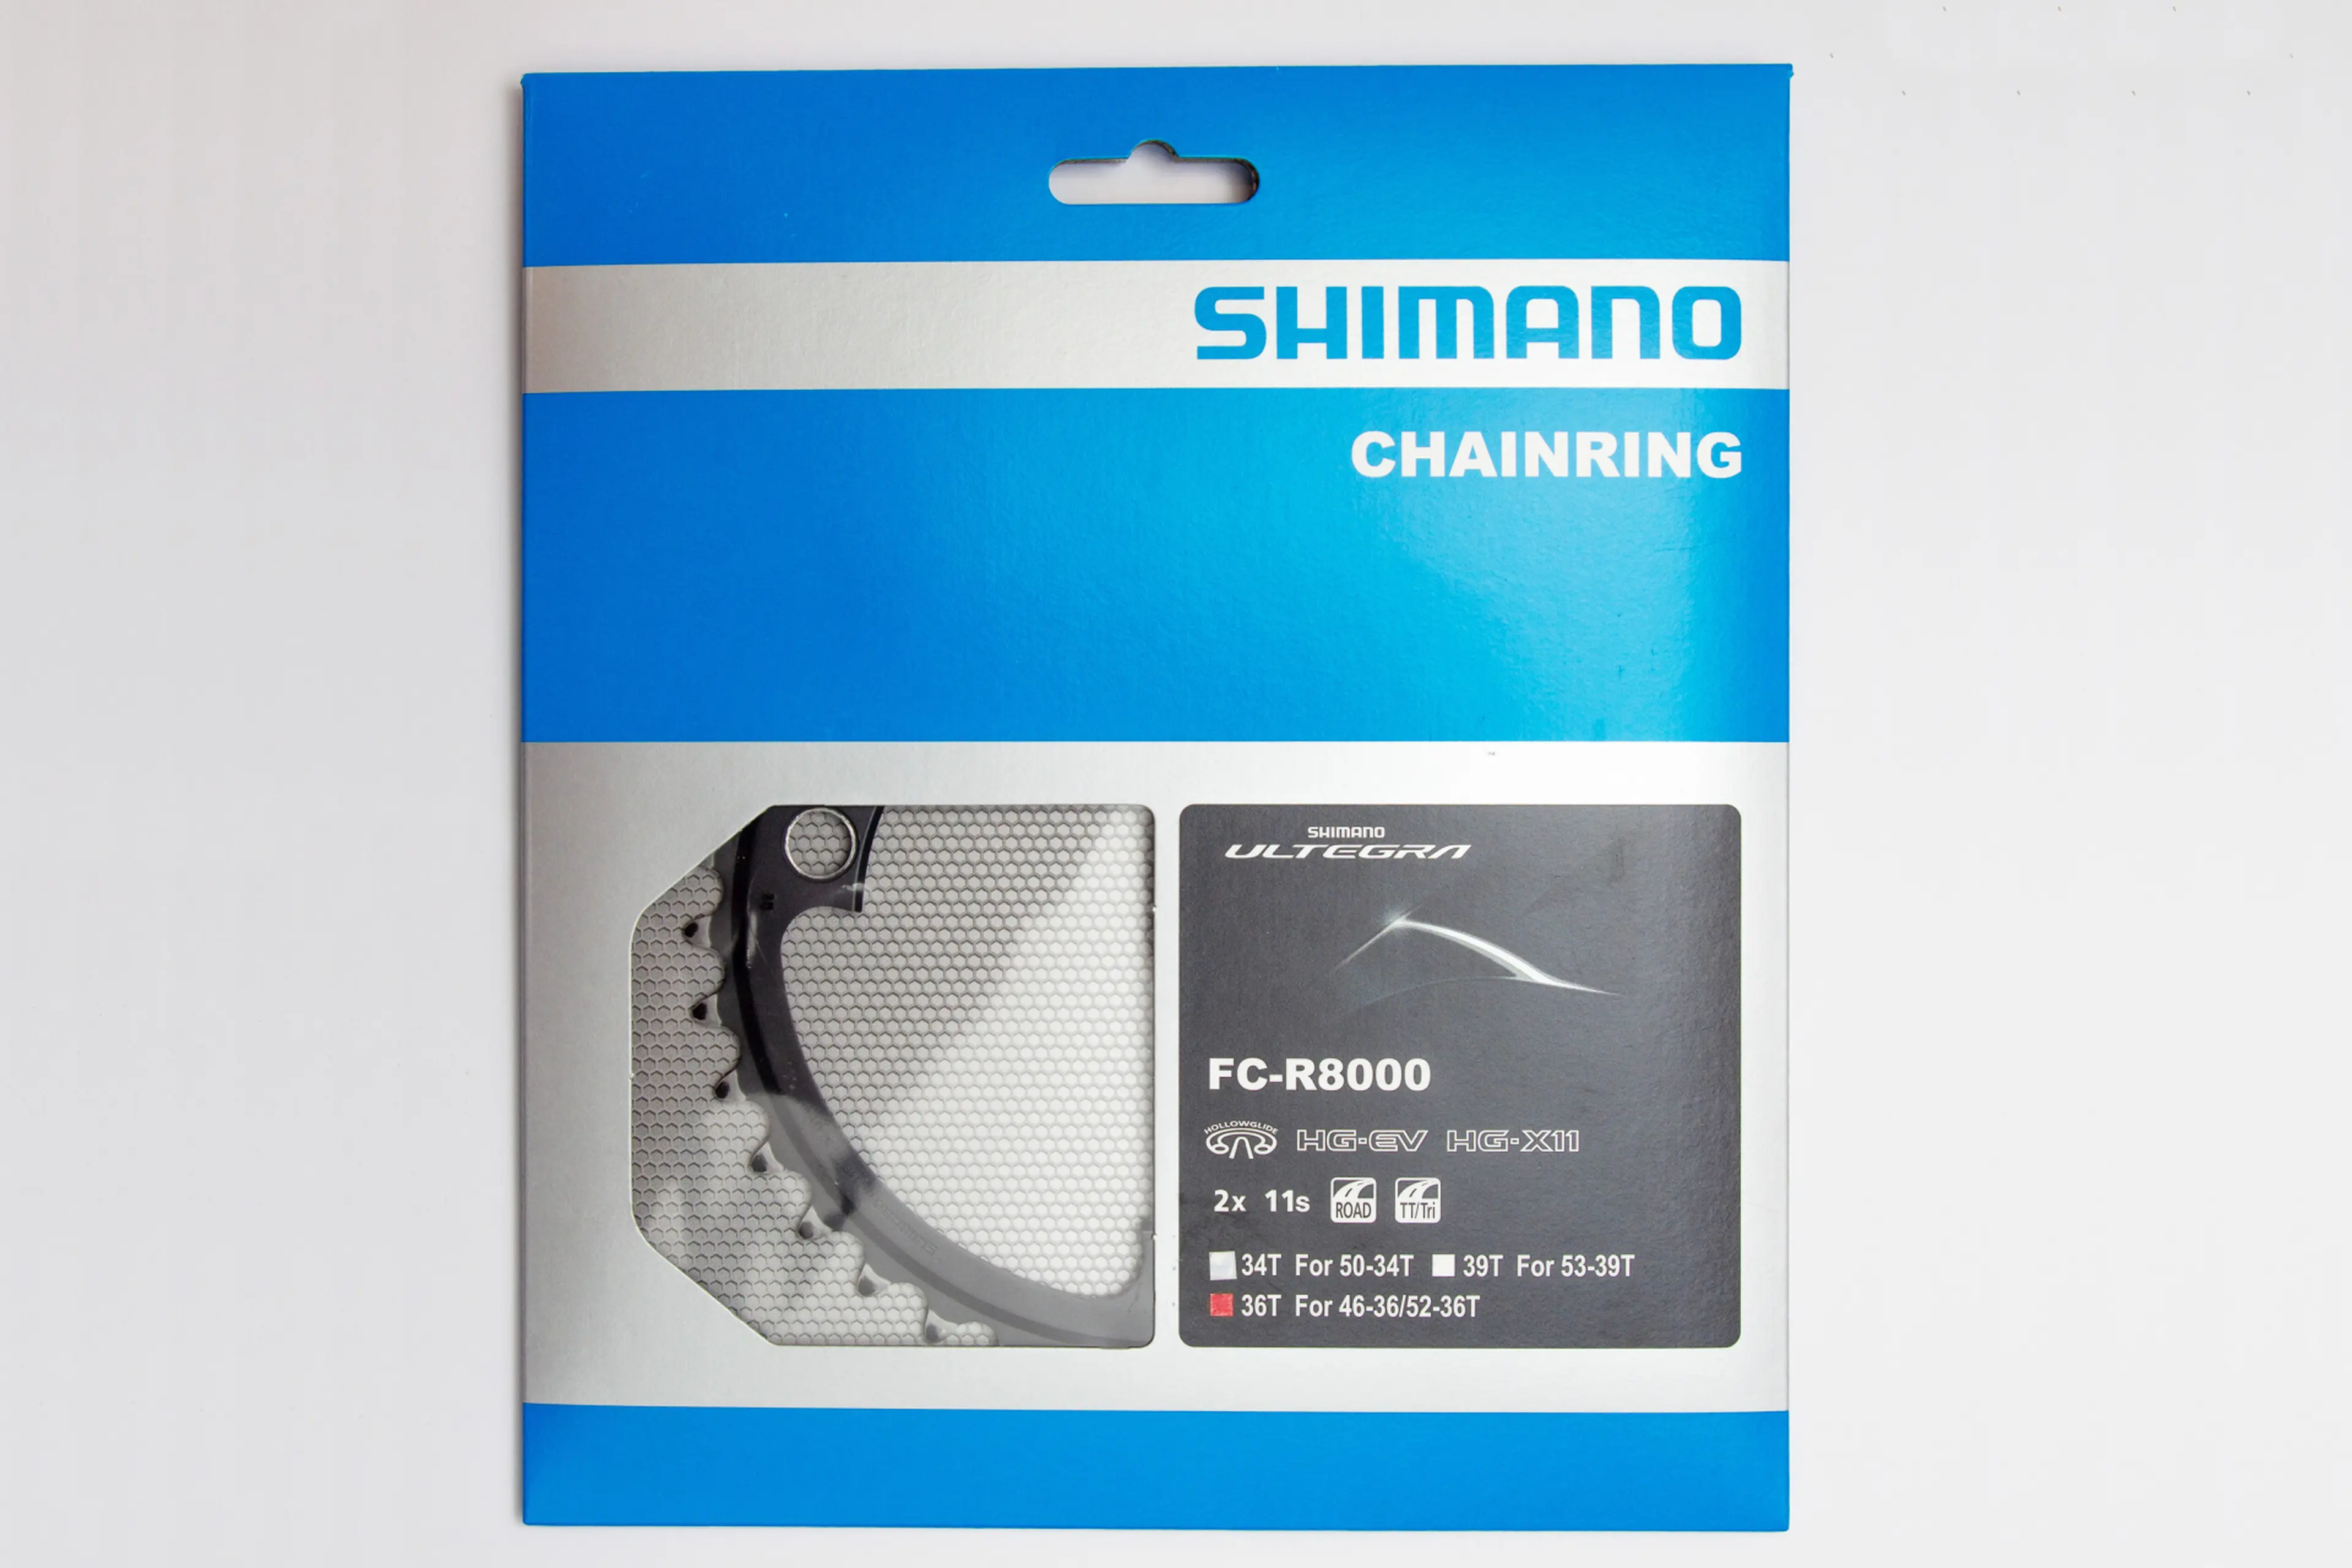 5. Foi Chainring Shimano Ultegra R8000 FC-R8000